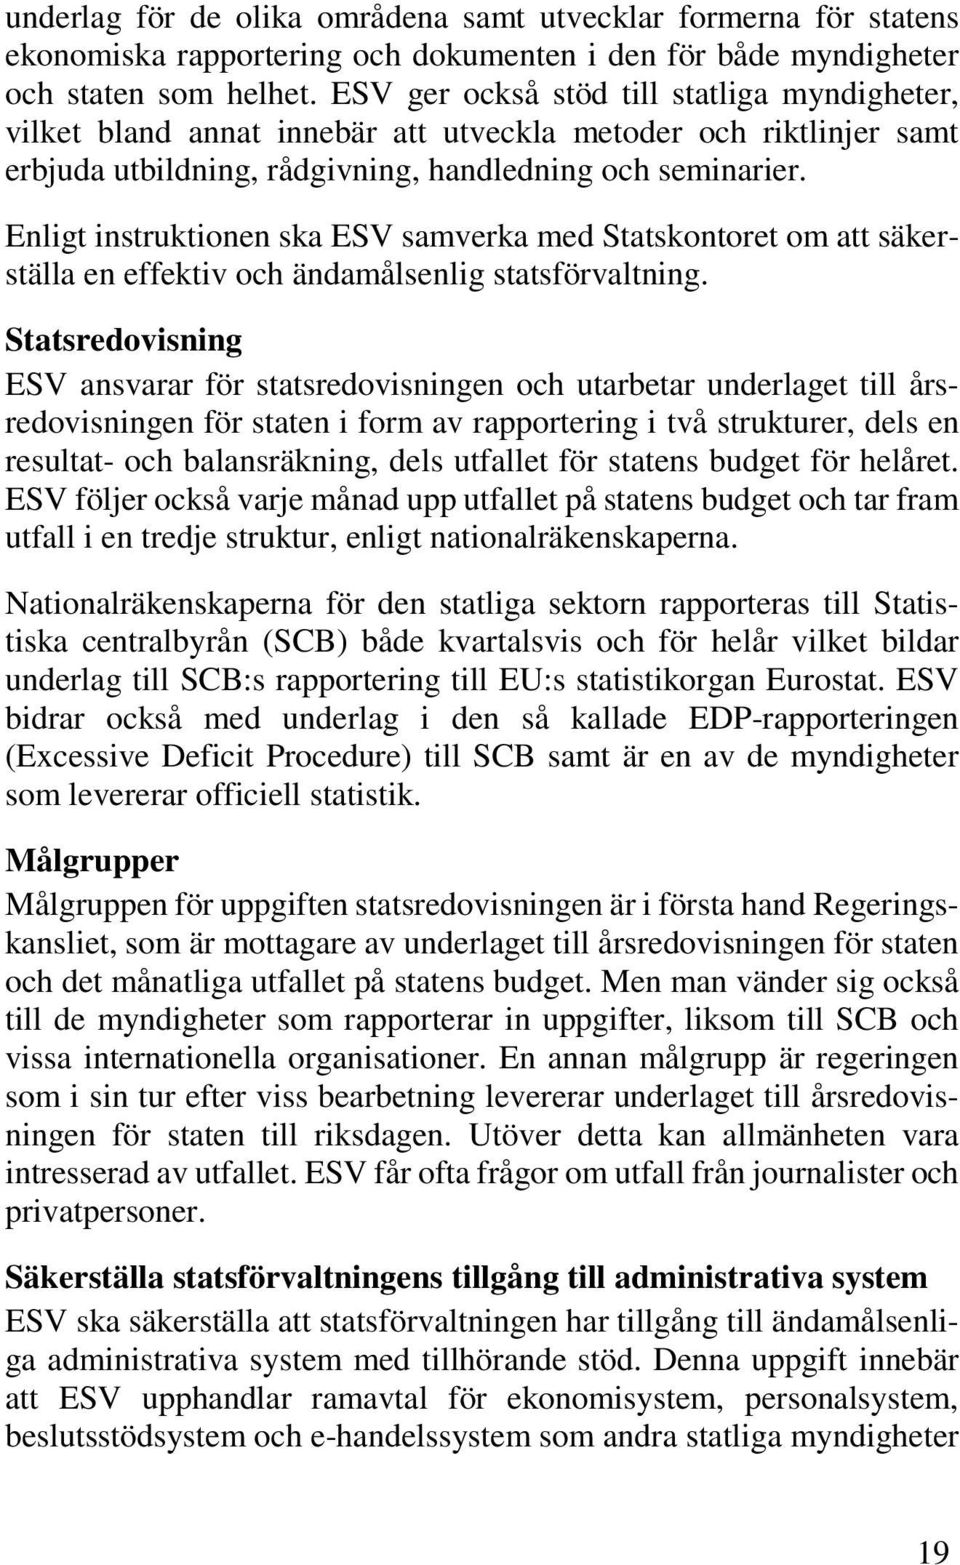 Enligt instruktionen ska ESV samverka med Statskontoret om att säkerställa en effektiv och ändamålsenlig statsförvaltning.